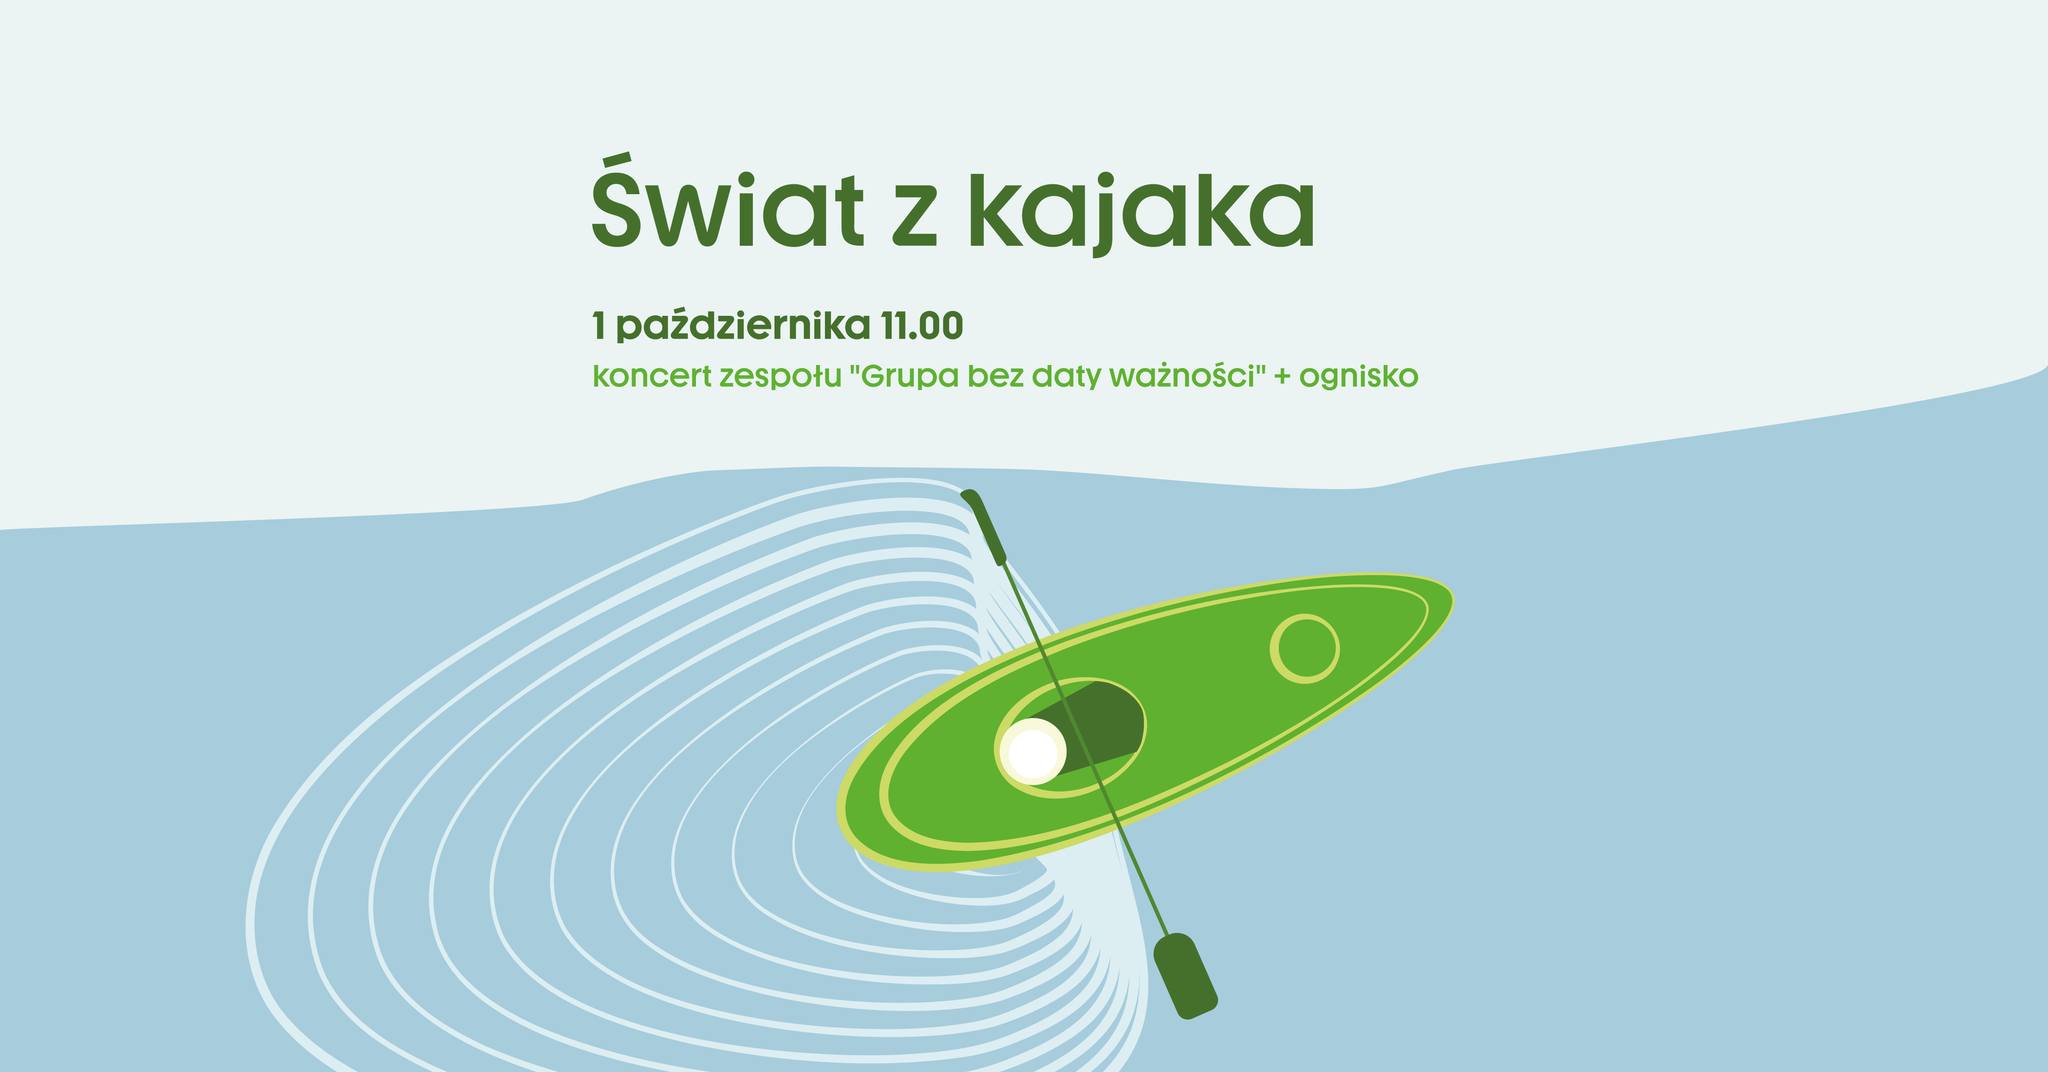 Świat z Kajaka - koncert zespołu "Grupa bez daty ważności" + ognisko